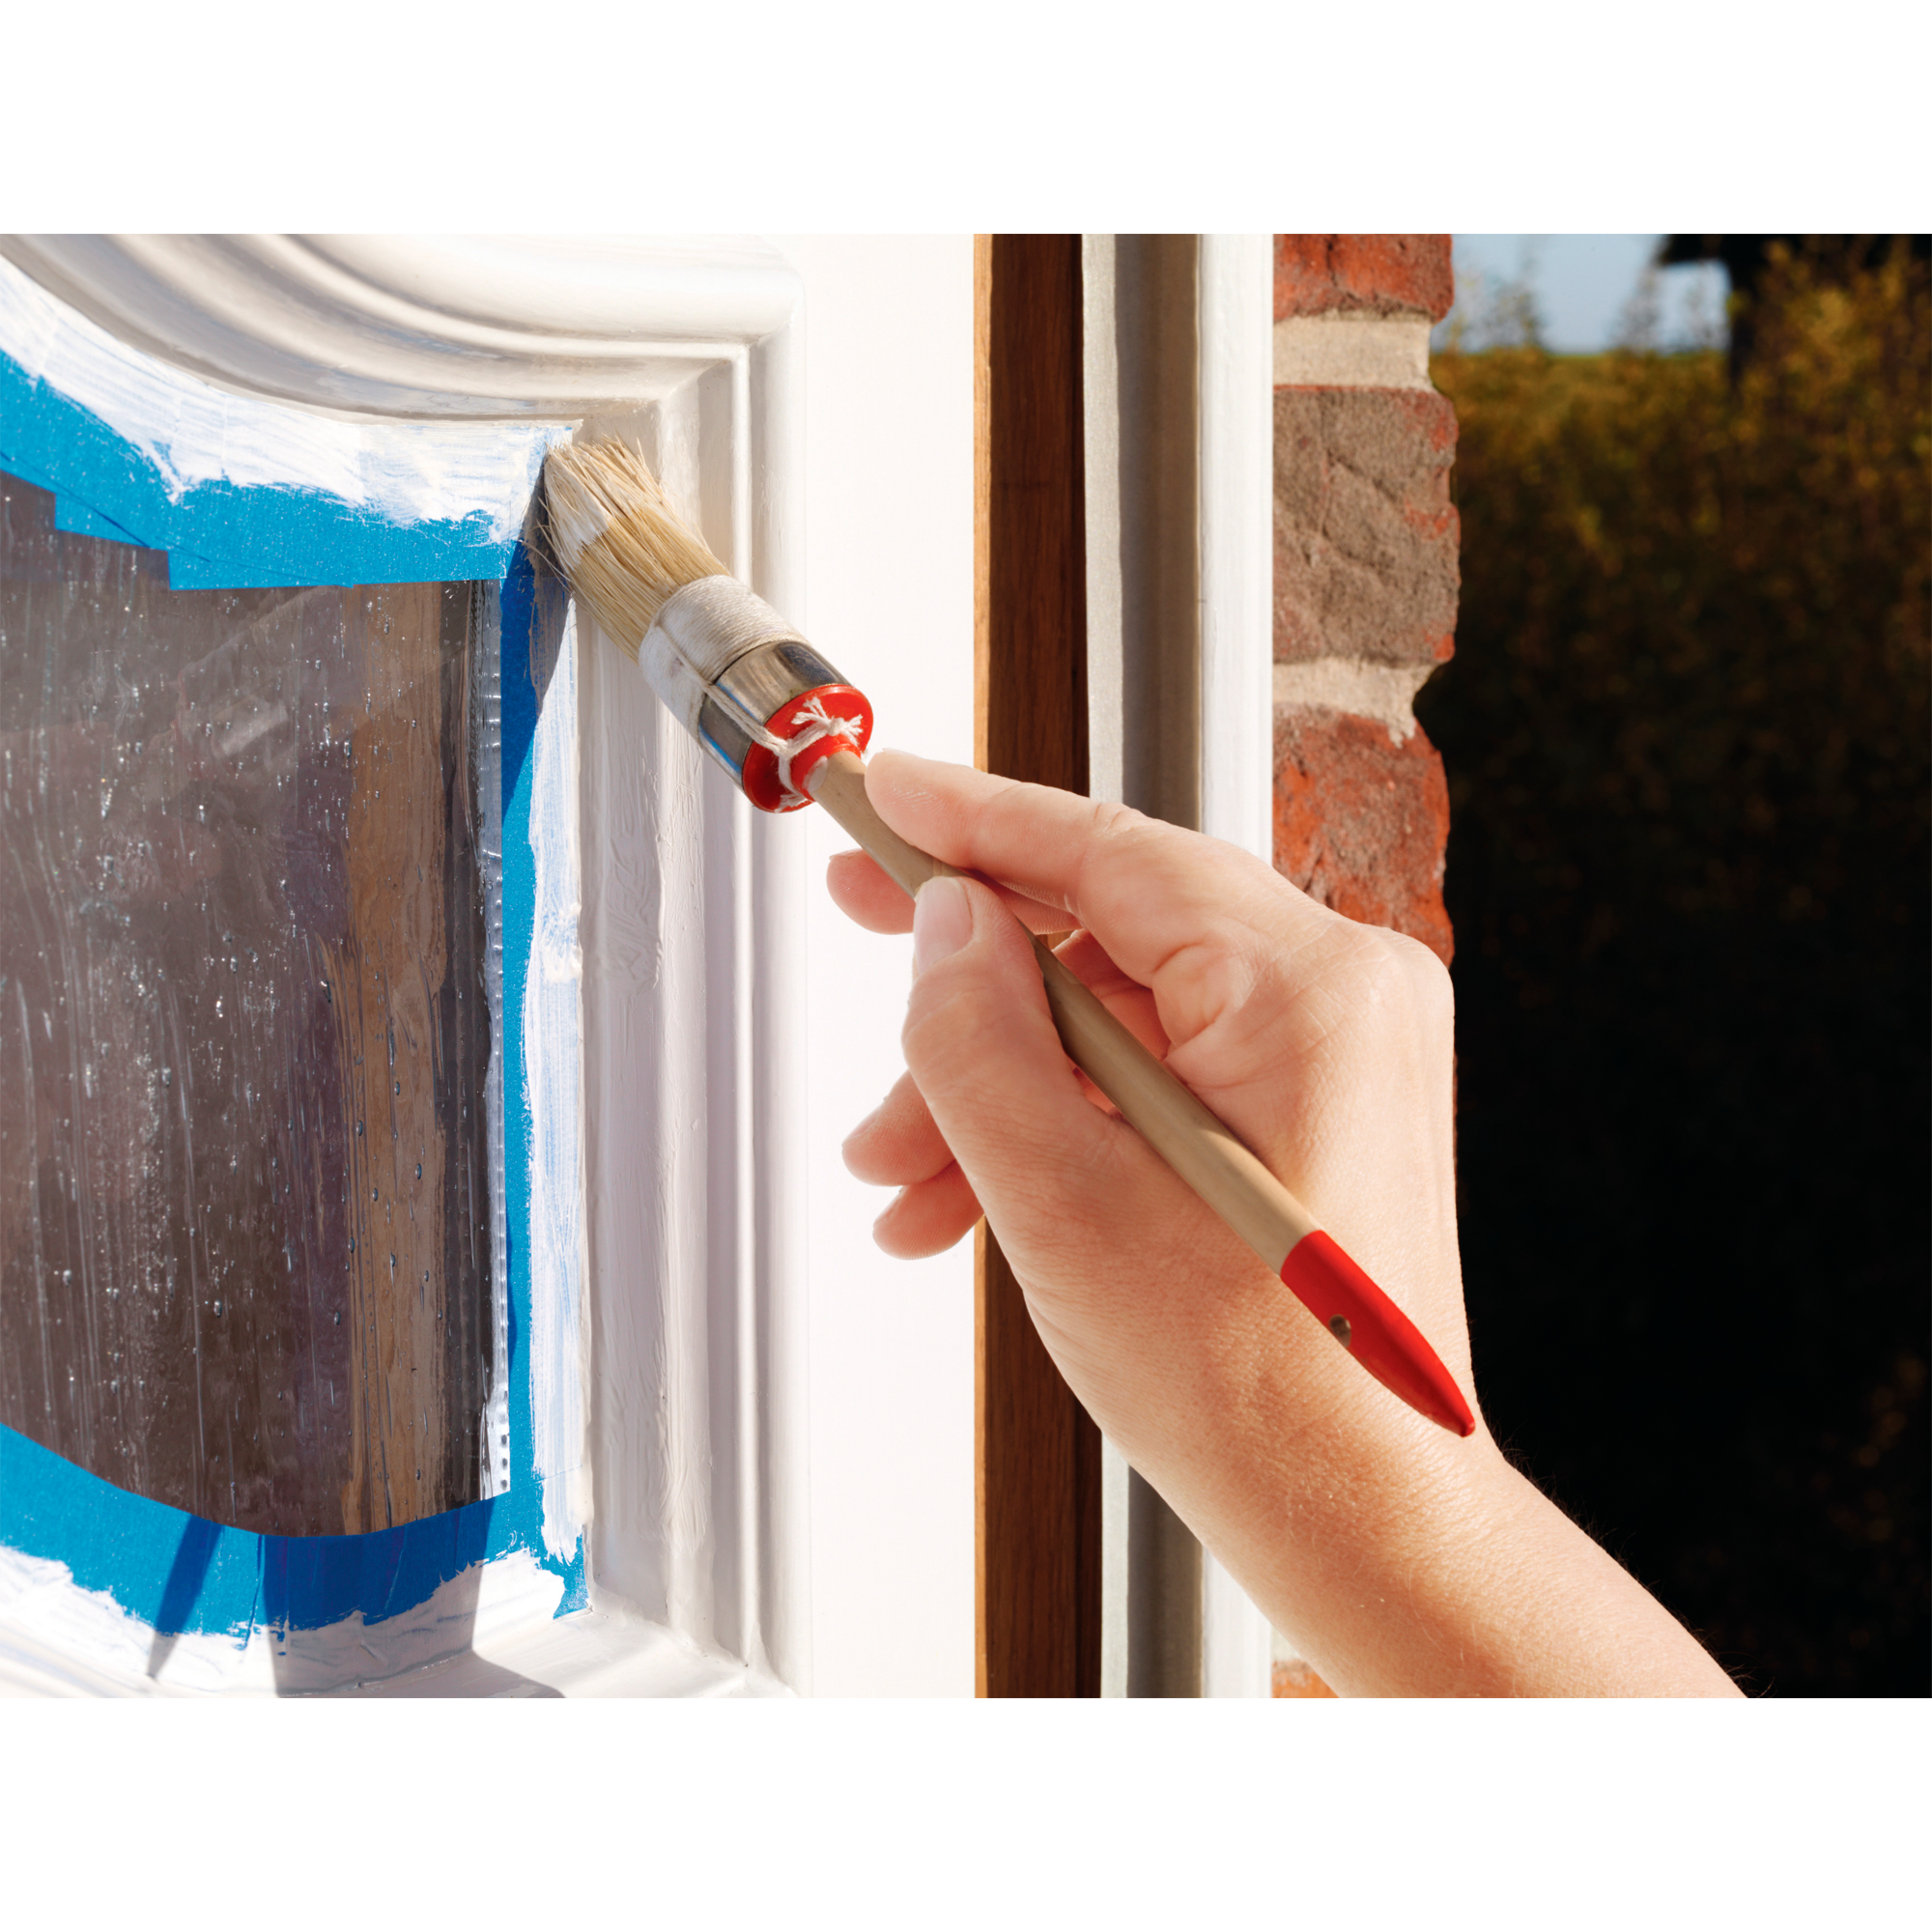 Malerband für Außenbereiche 250 x 2,5 cm blau + product picture